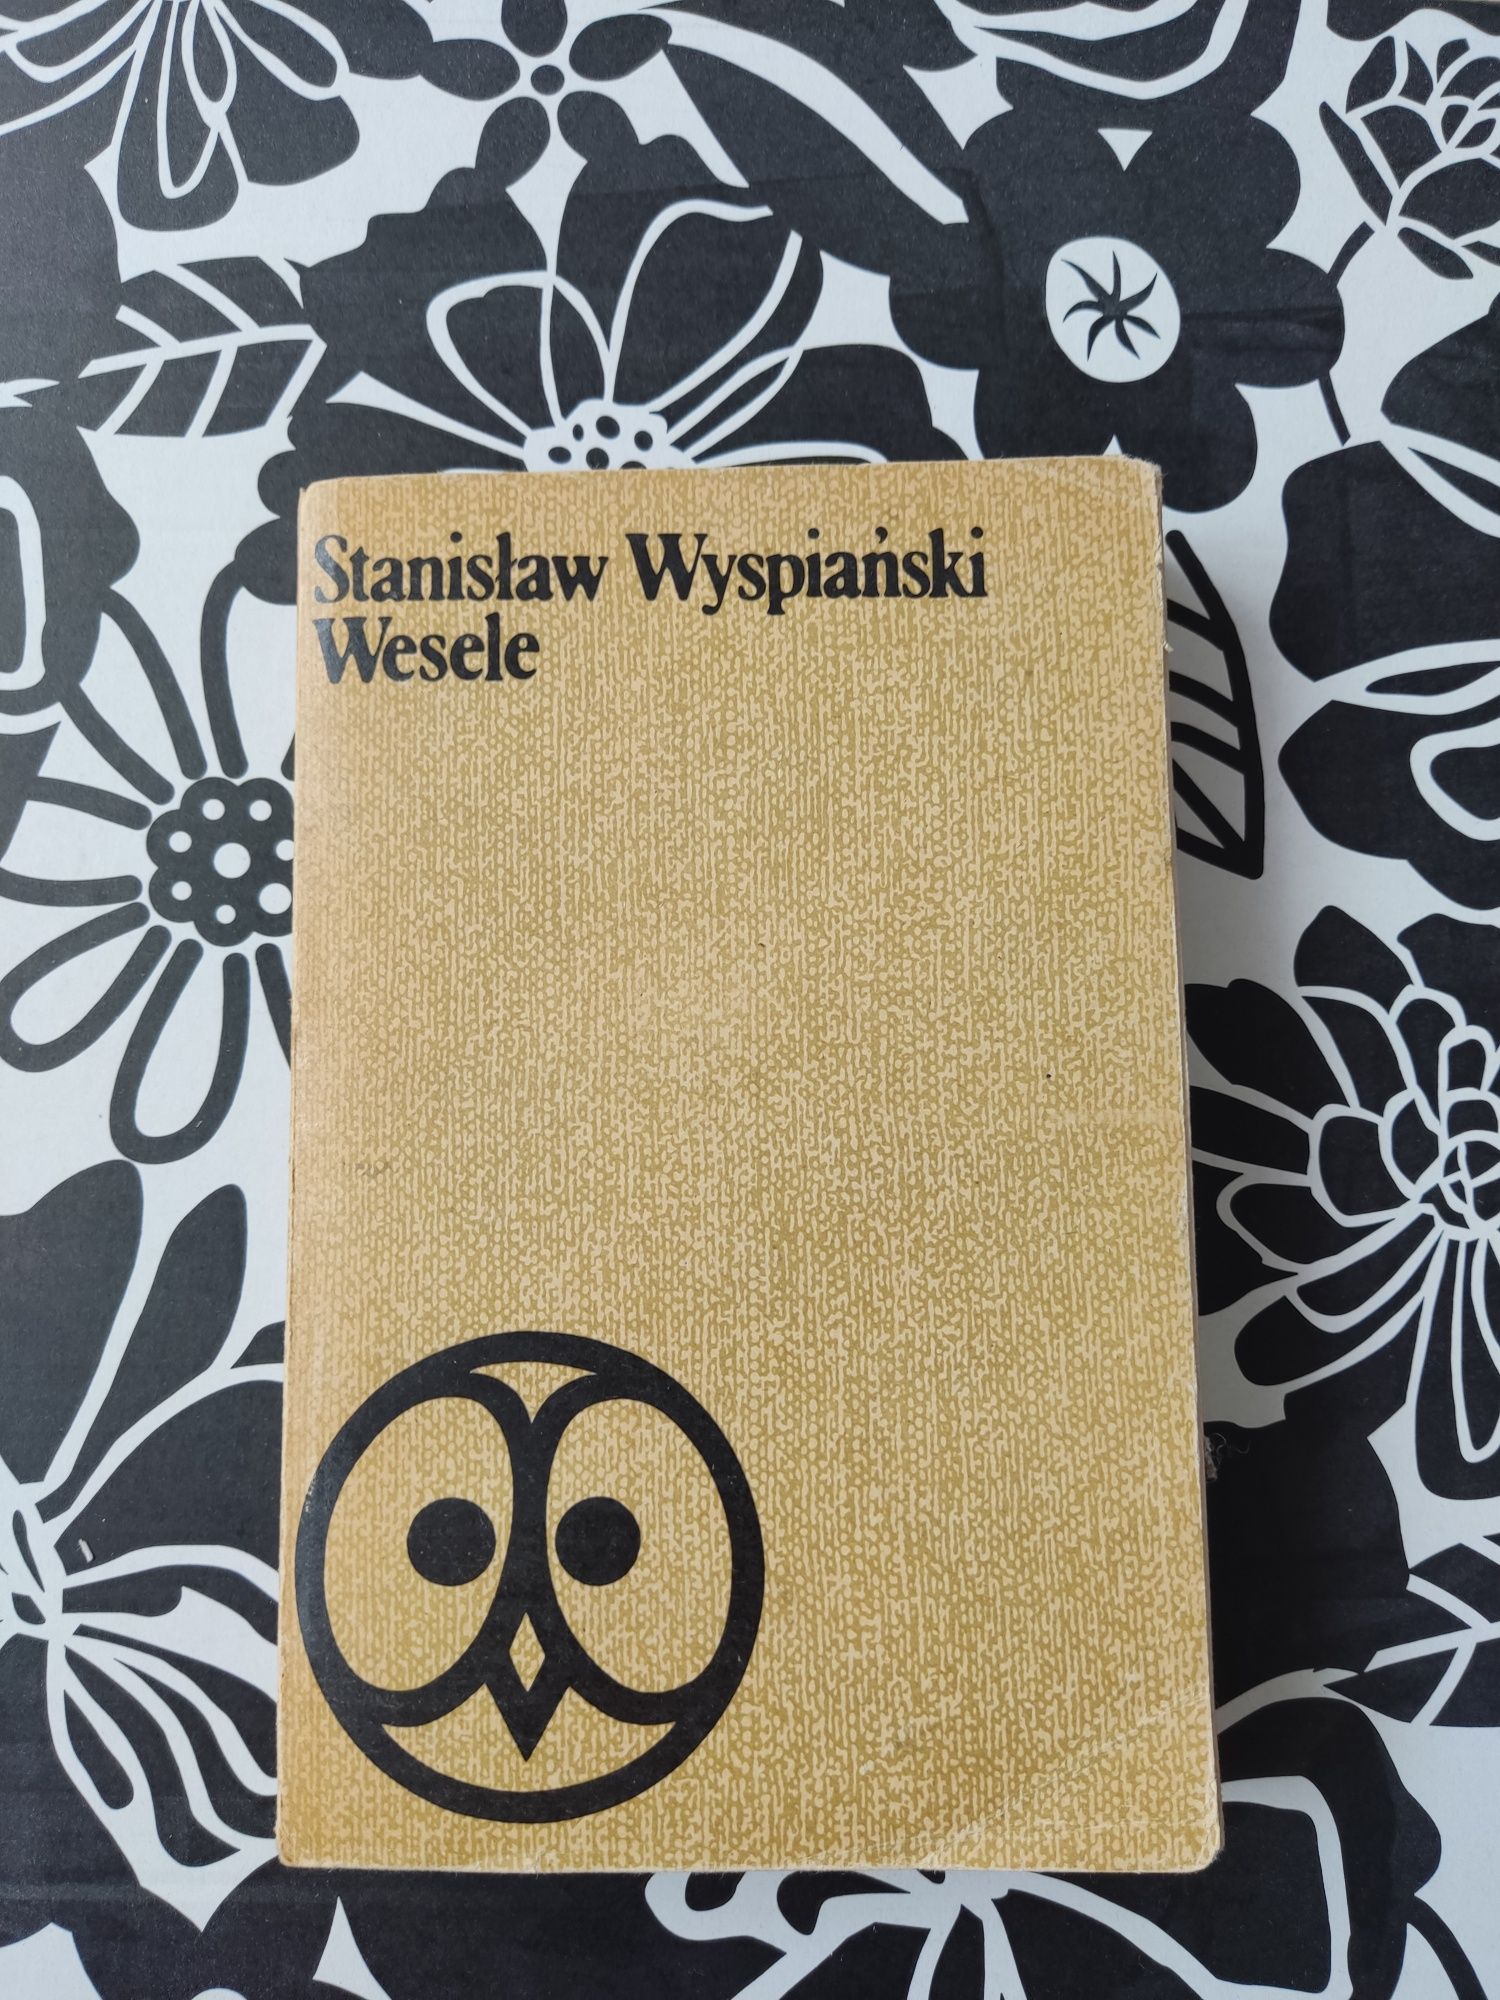 Wesele Stanisław Wyspiański